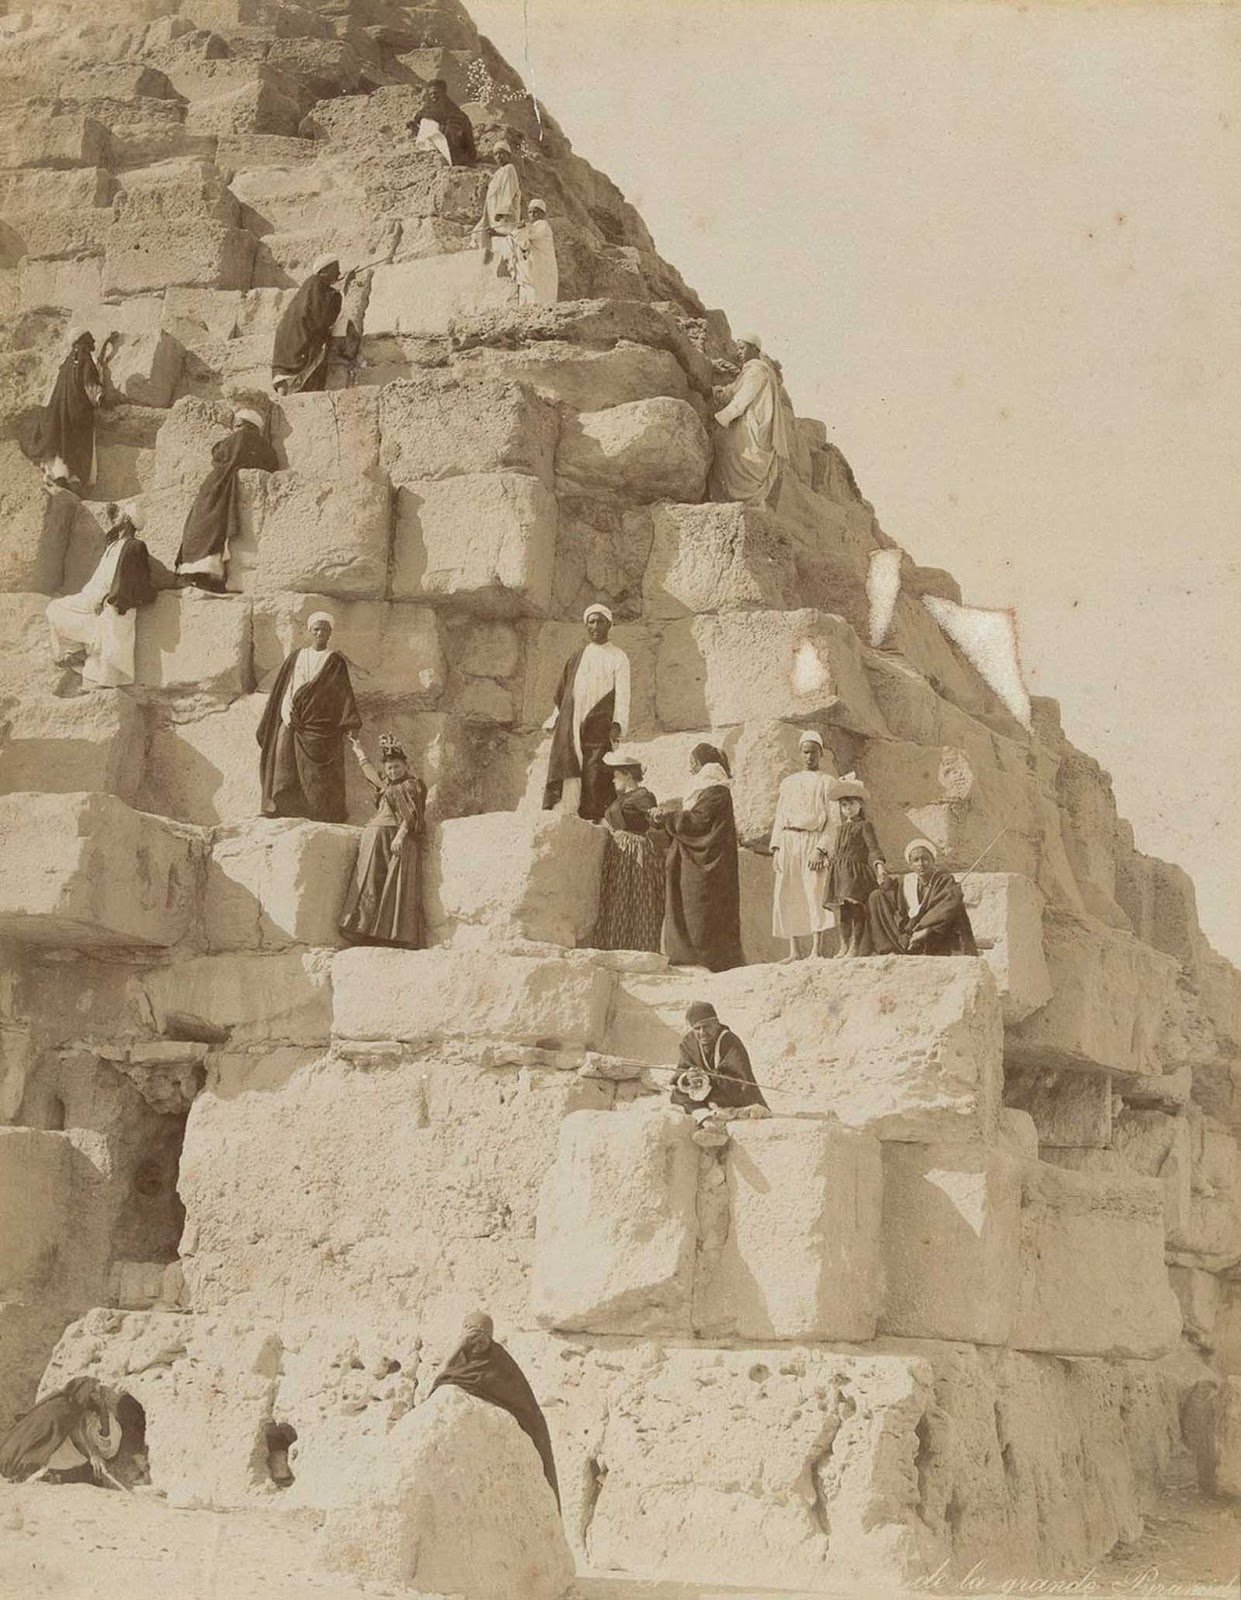 Turistas nas pirâmides